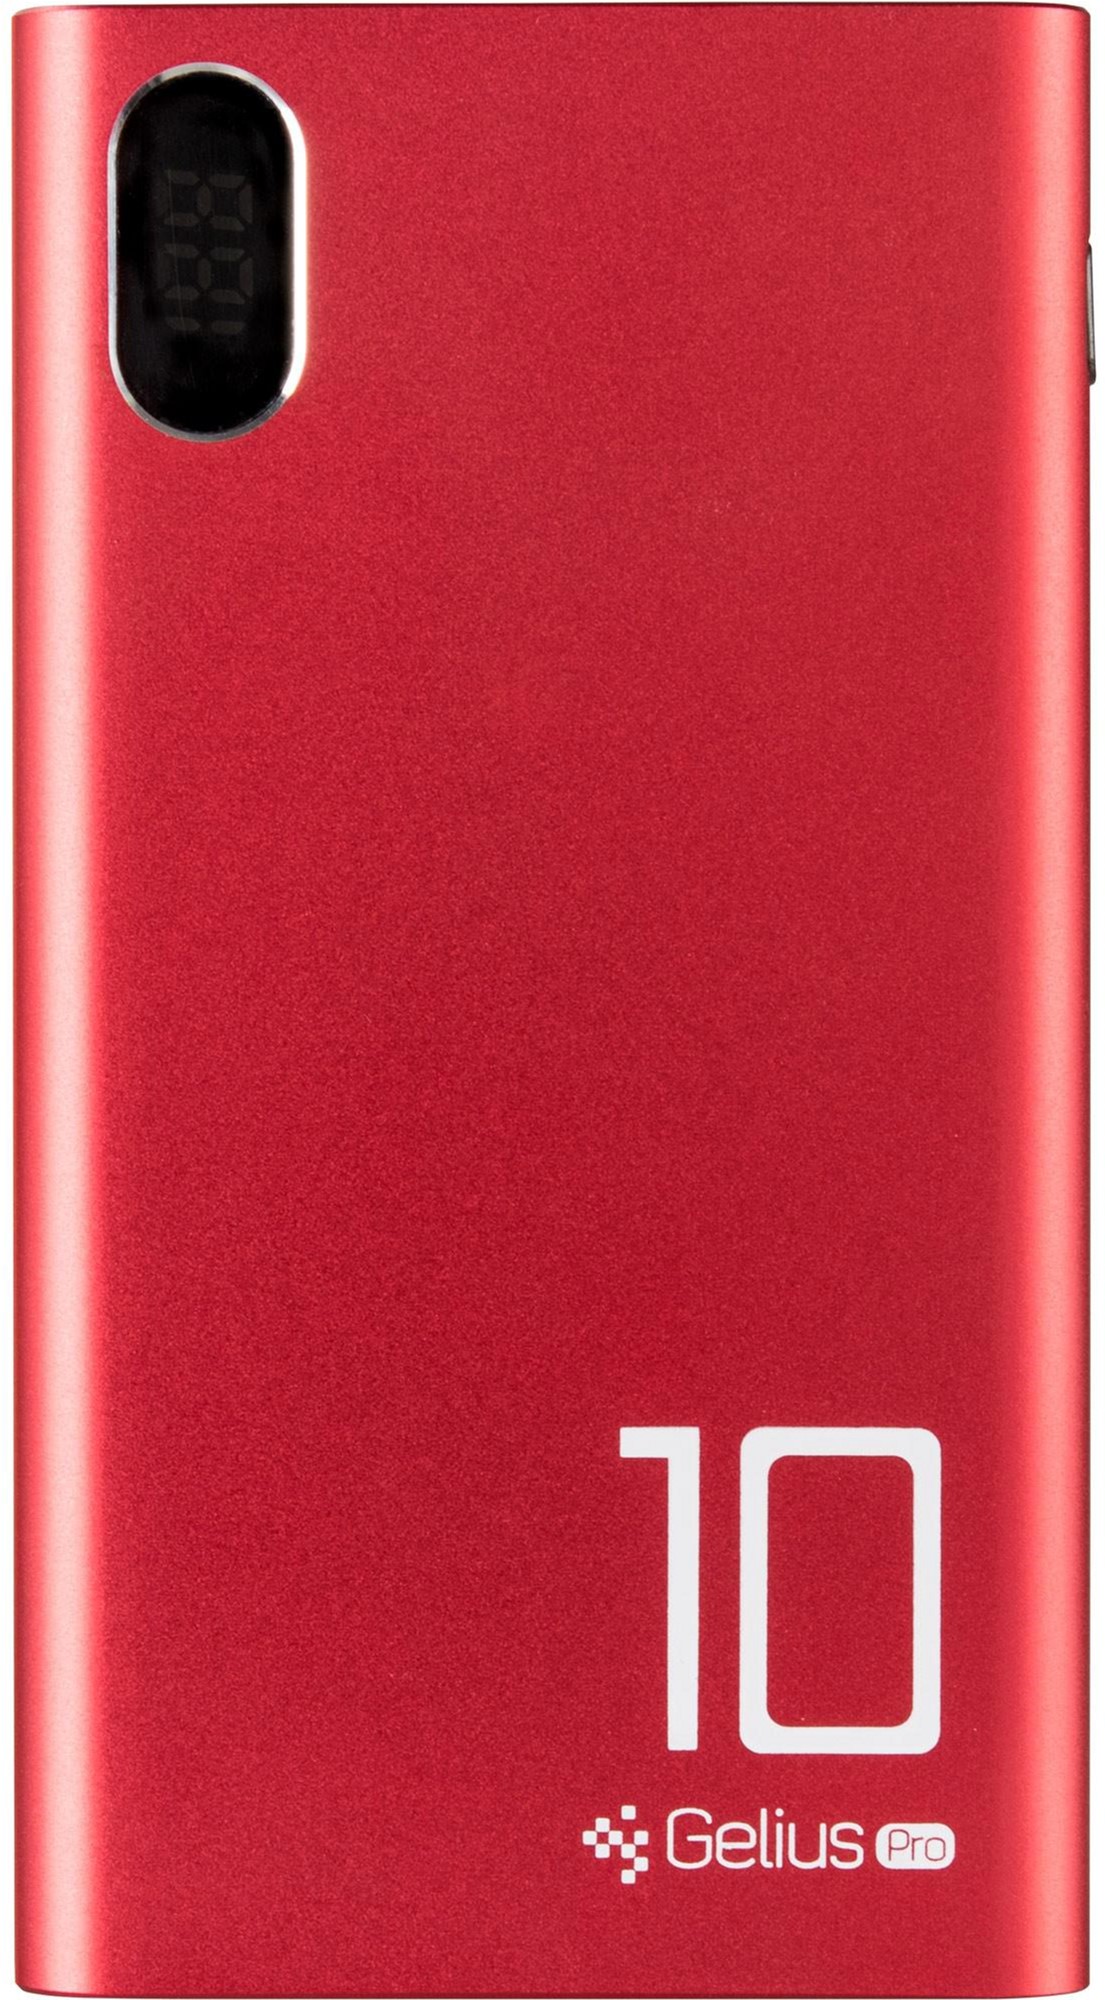 Универсальная мобильная батарея GELIUS Pro CoolMini GP-PB10-005 10000mAh Red (72160) в Киеве